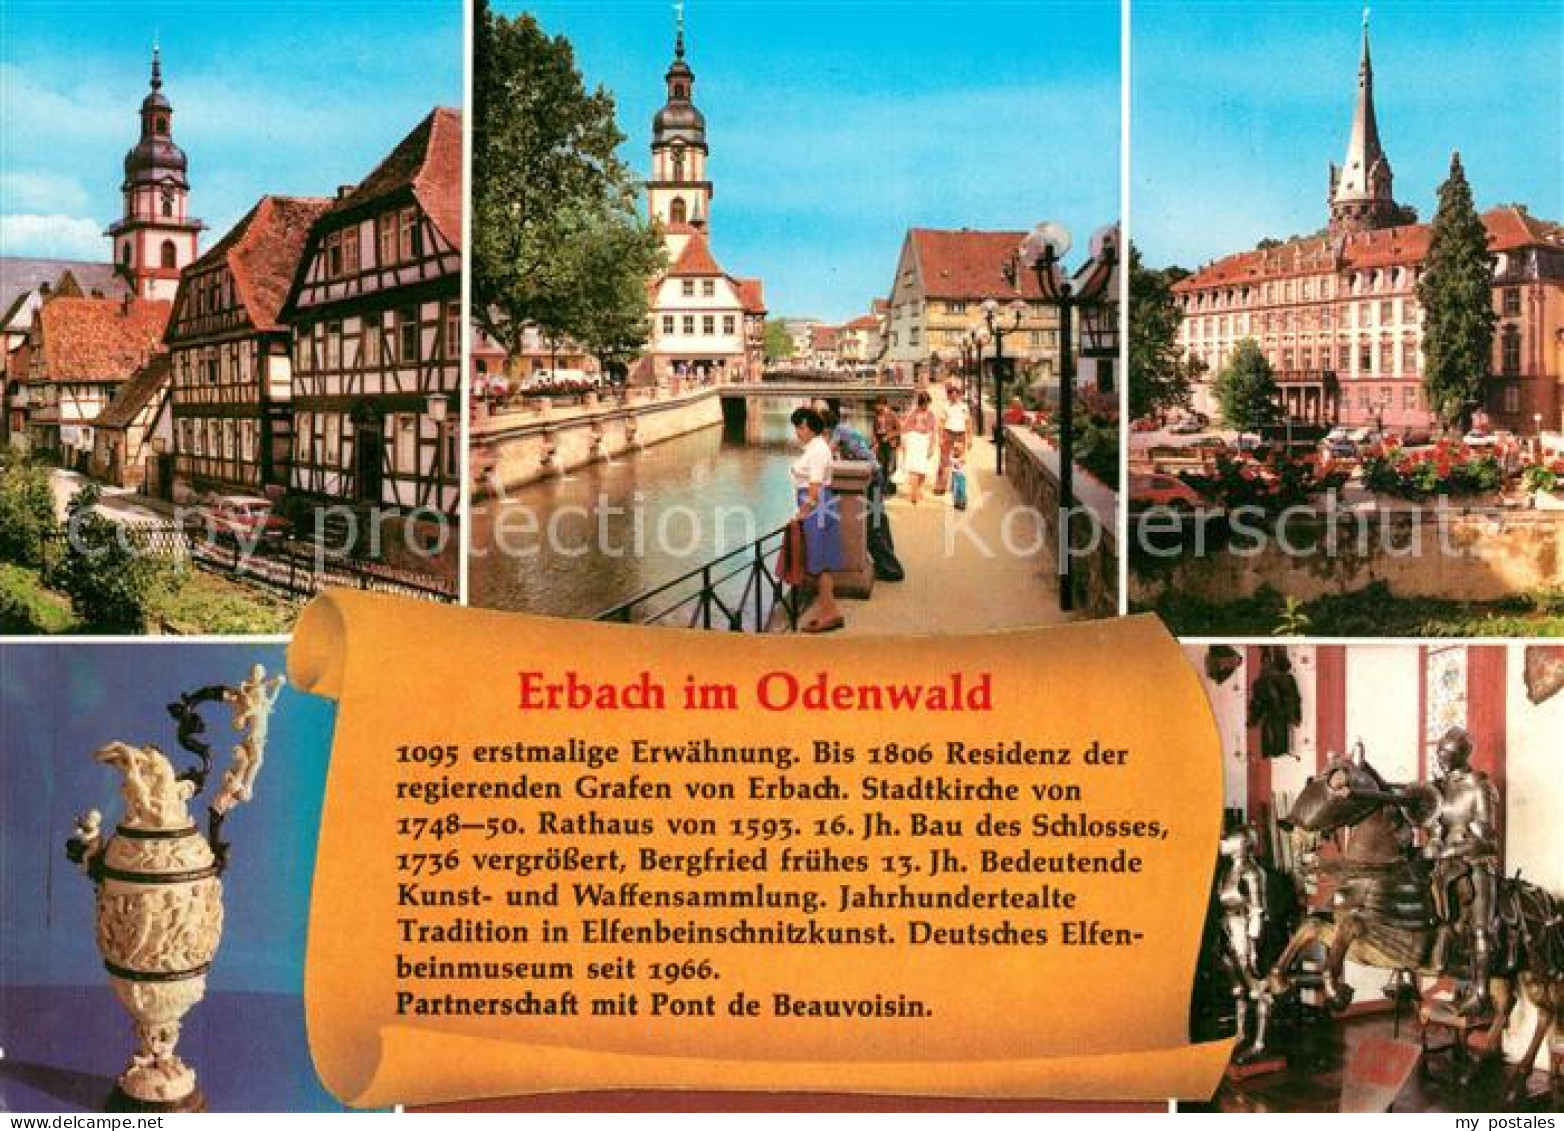 73100075 Erbach Odenwald Fachwerkhaeuser Kirche Kanal Markt Ritter In Ruestung E - Erbach